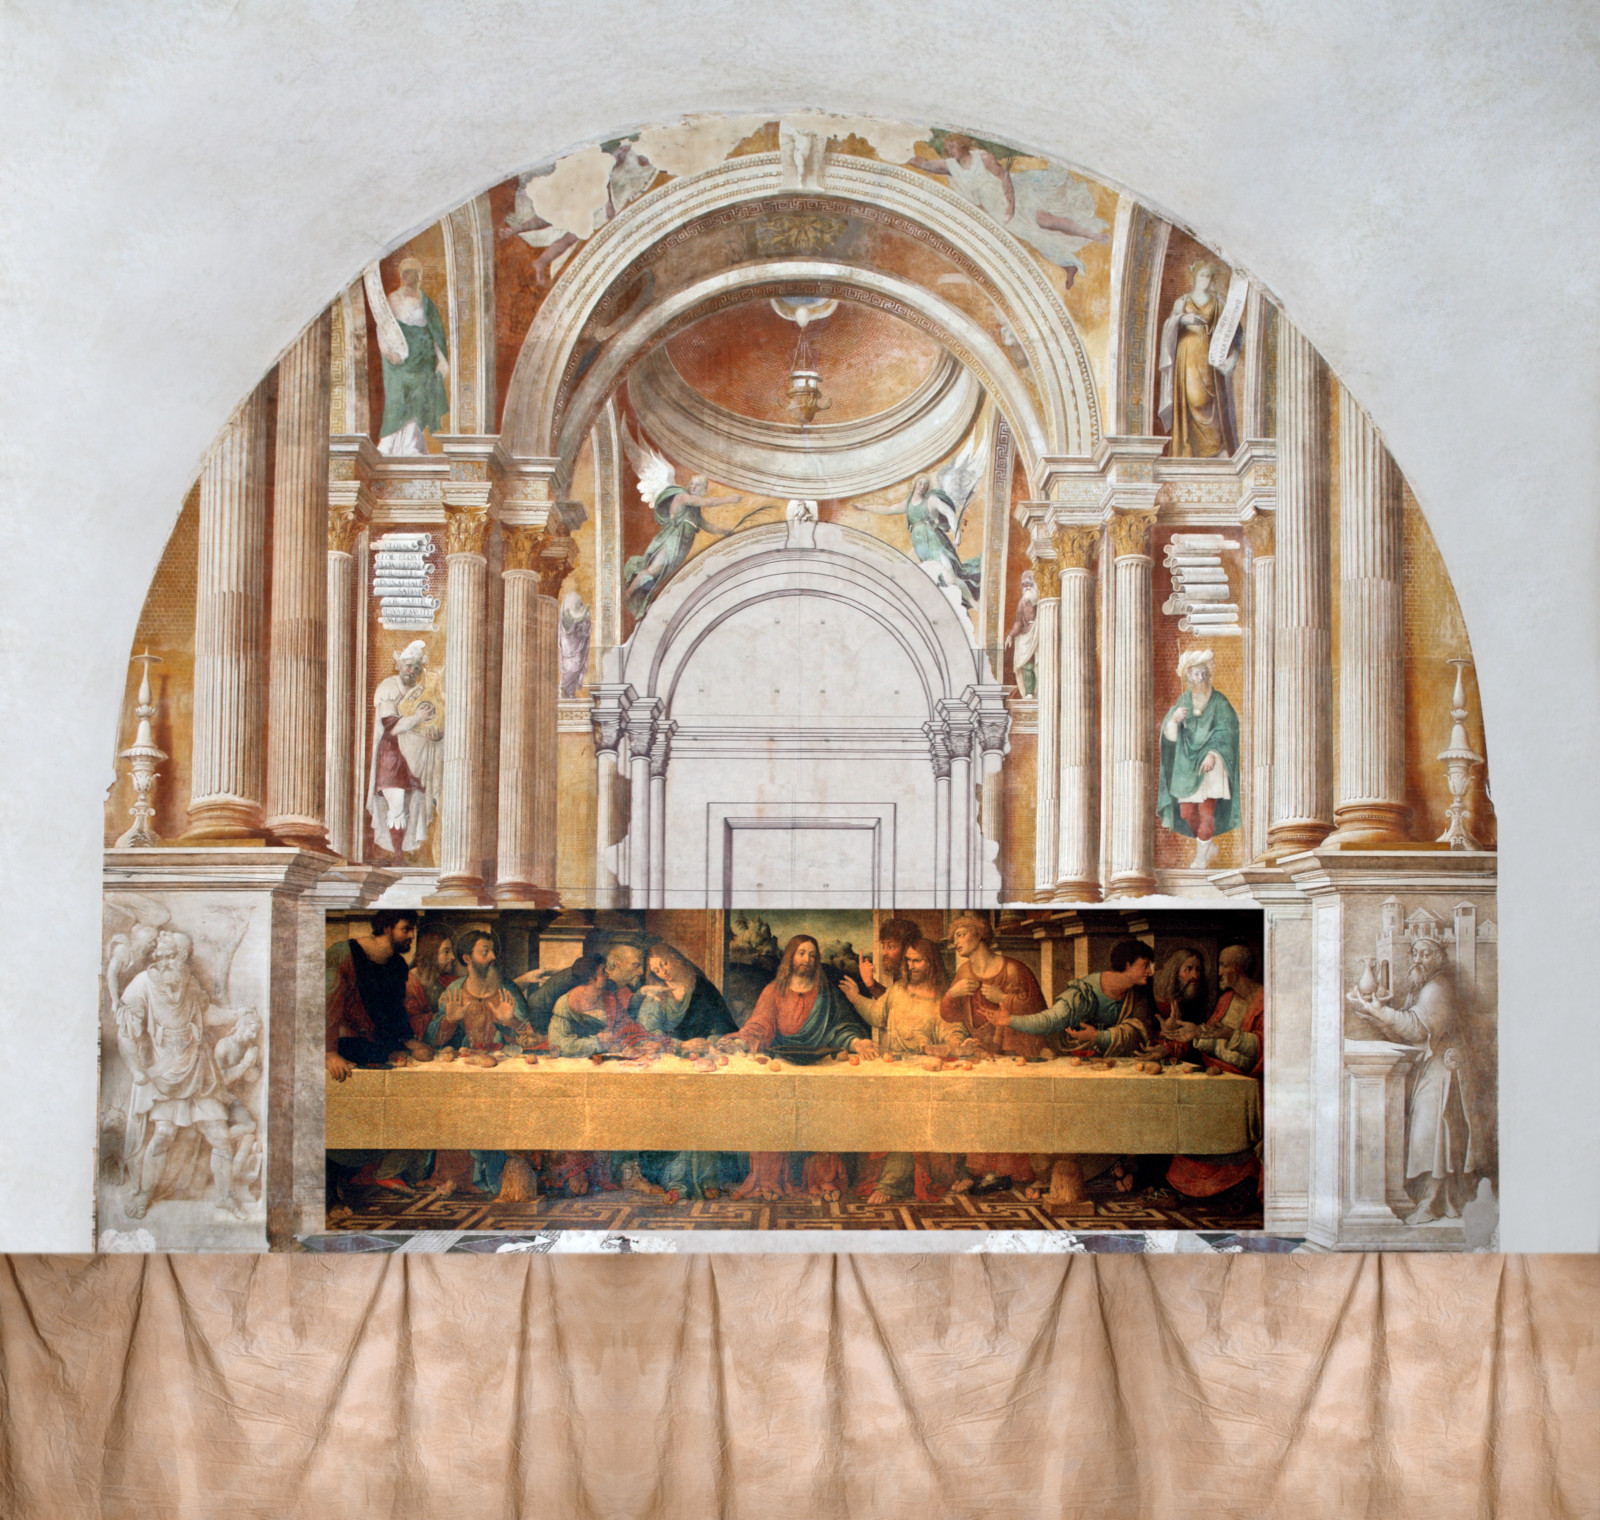 Correggio, Ambientazione architettonica del Cenacolo di Girolamo Bonsignori (1514 circa; affresco e interventi a secco, 1170 x 1135 cm; San Benedetto Po, Refettorio Grande) 